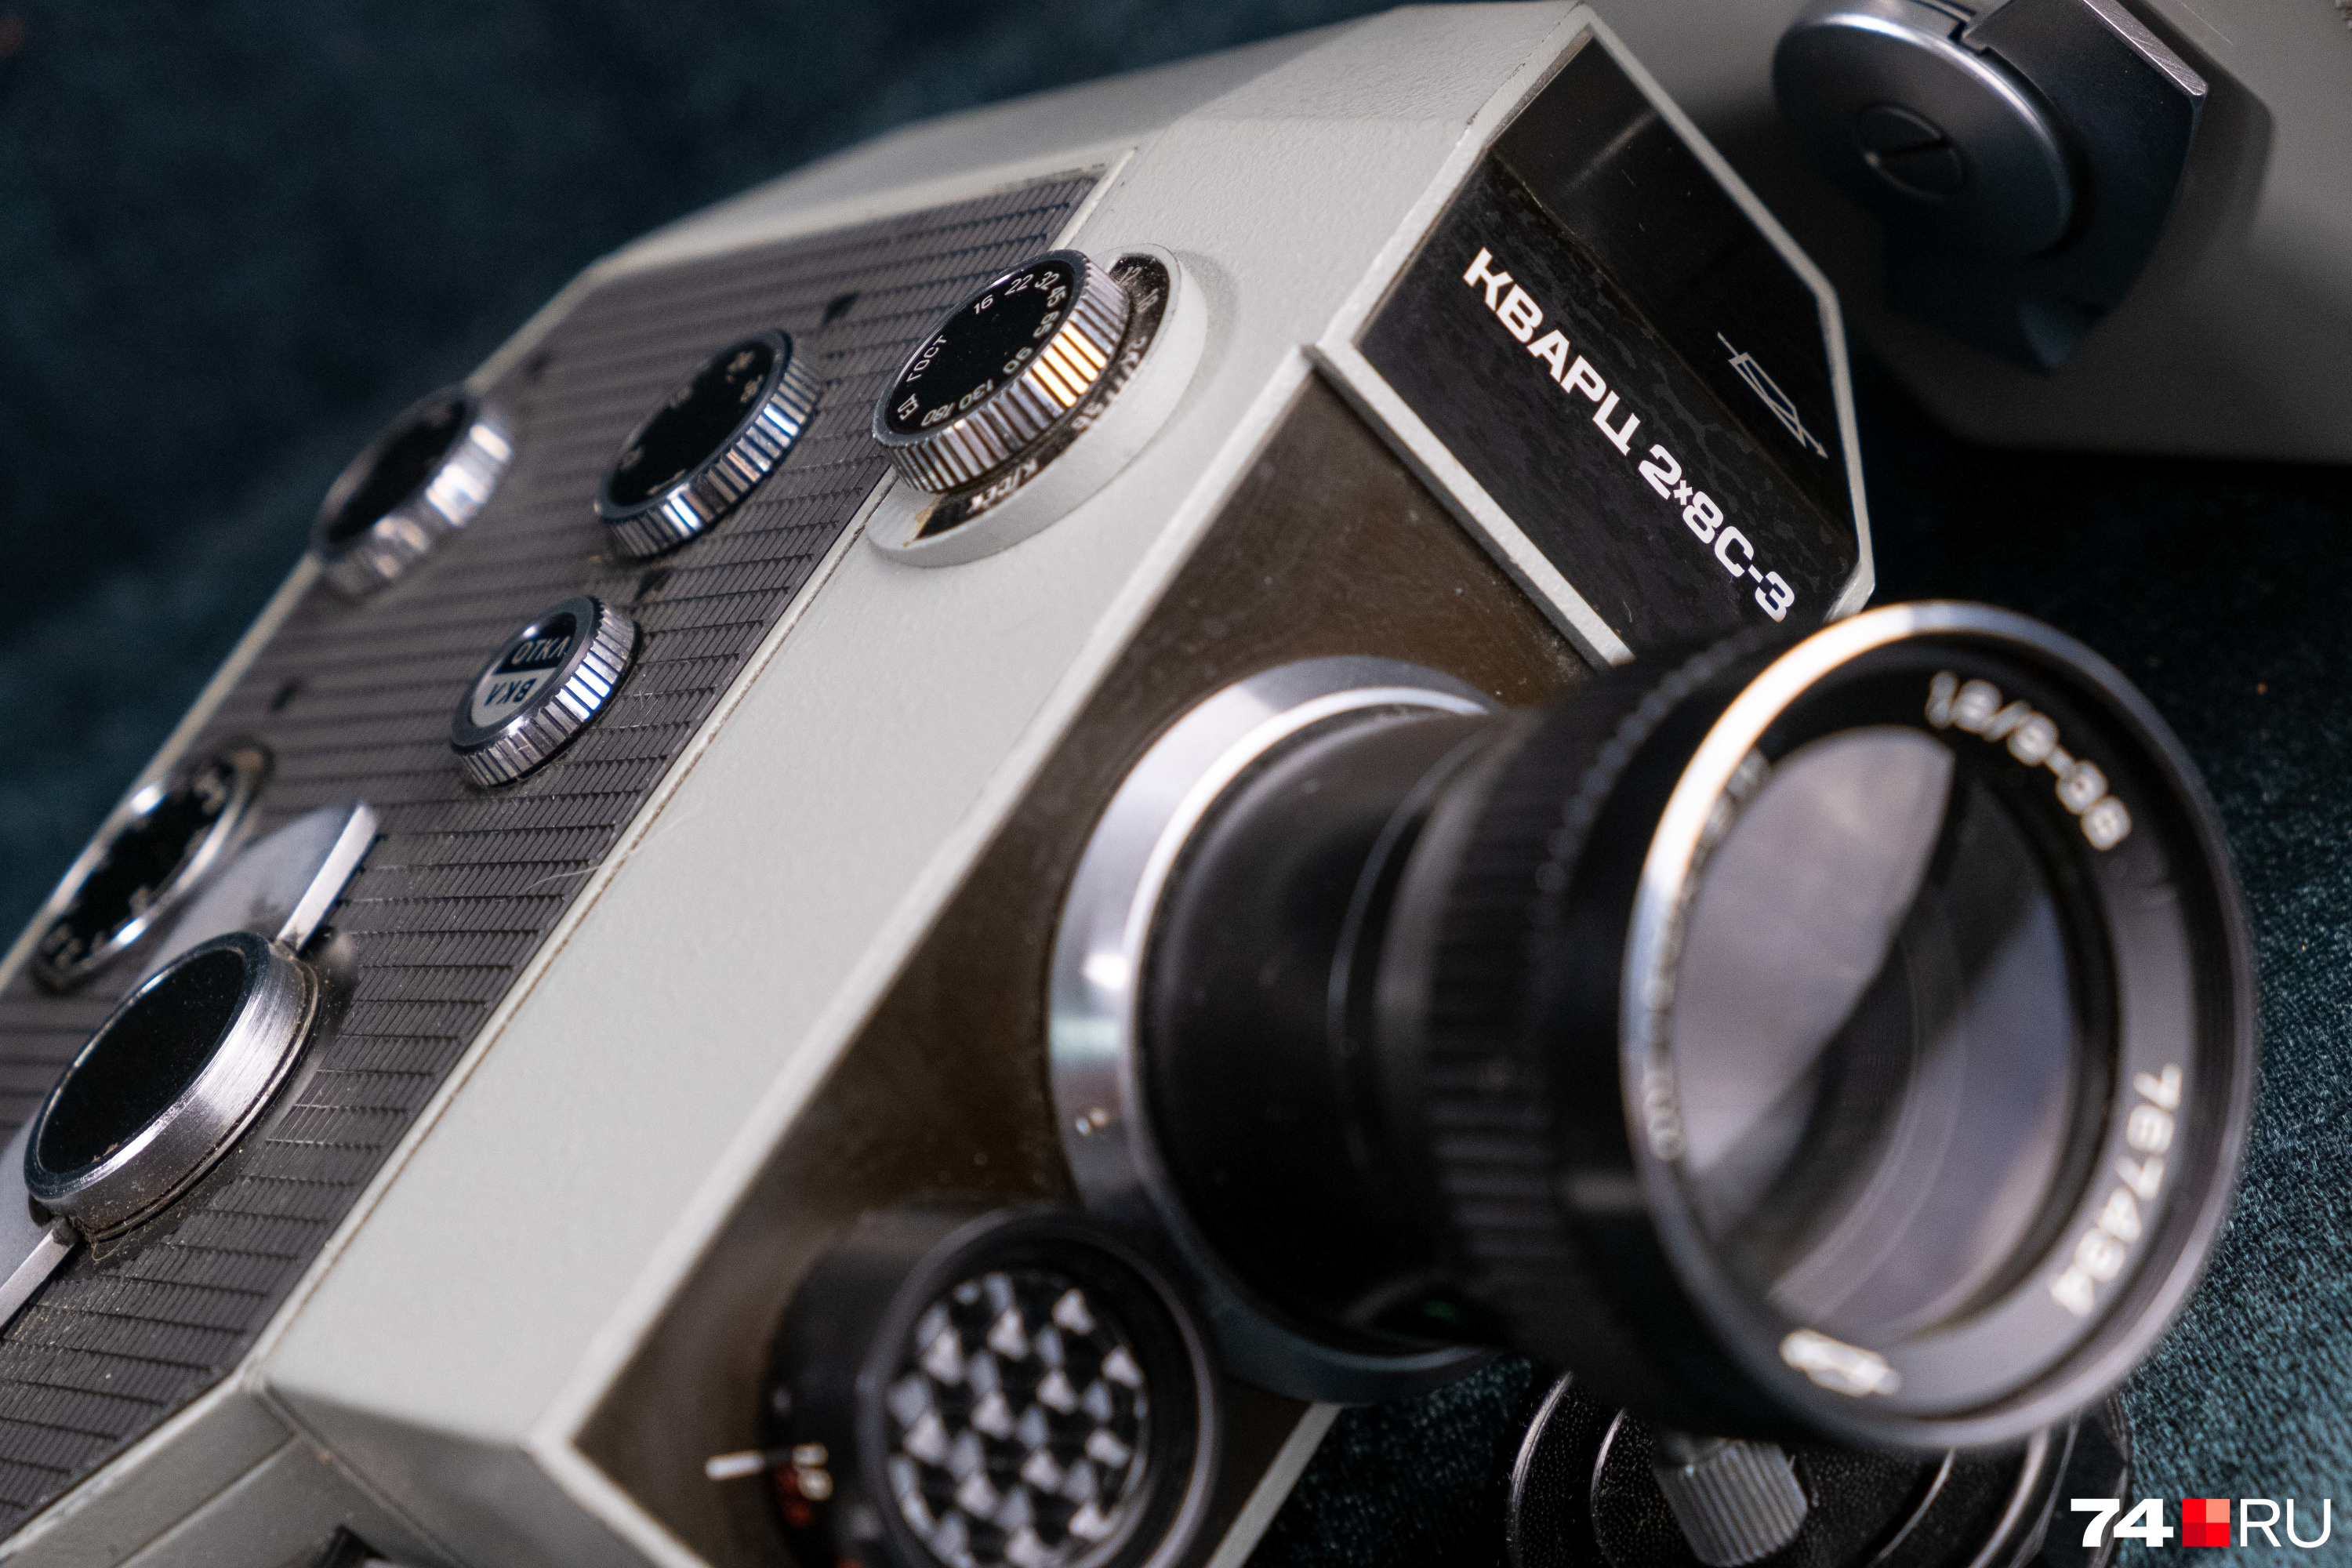 «Кварц-3» использовался для съемок на кинопленку формата <nobr class="_">2 х 8 мм</nobr>. Работать этот киноаппарат 1970-х годов мог при температуре от -15 до +40 градусов Цельсия